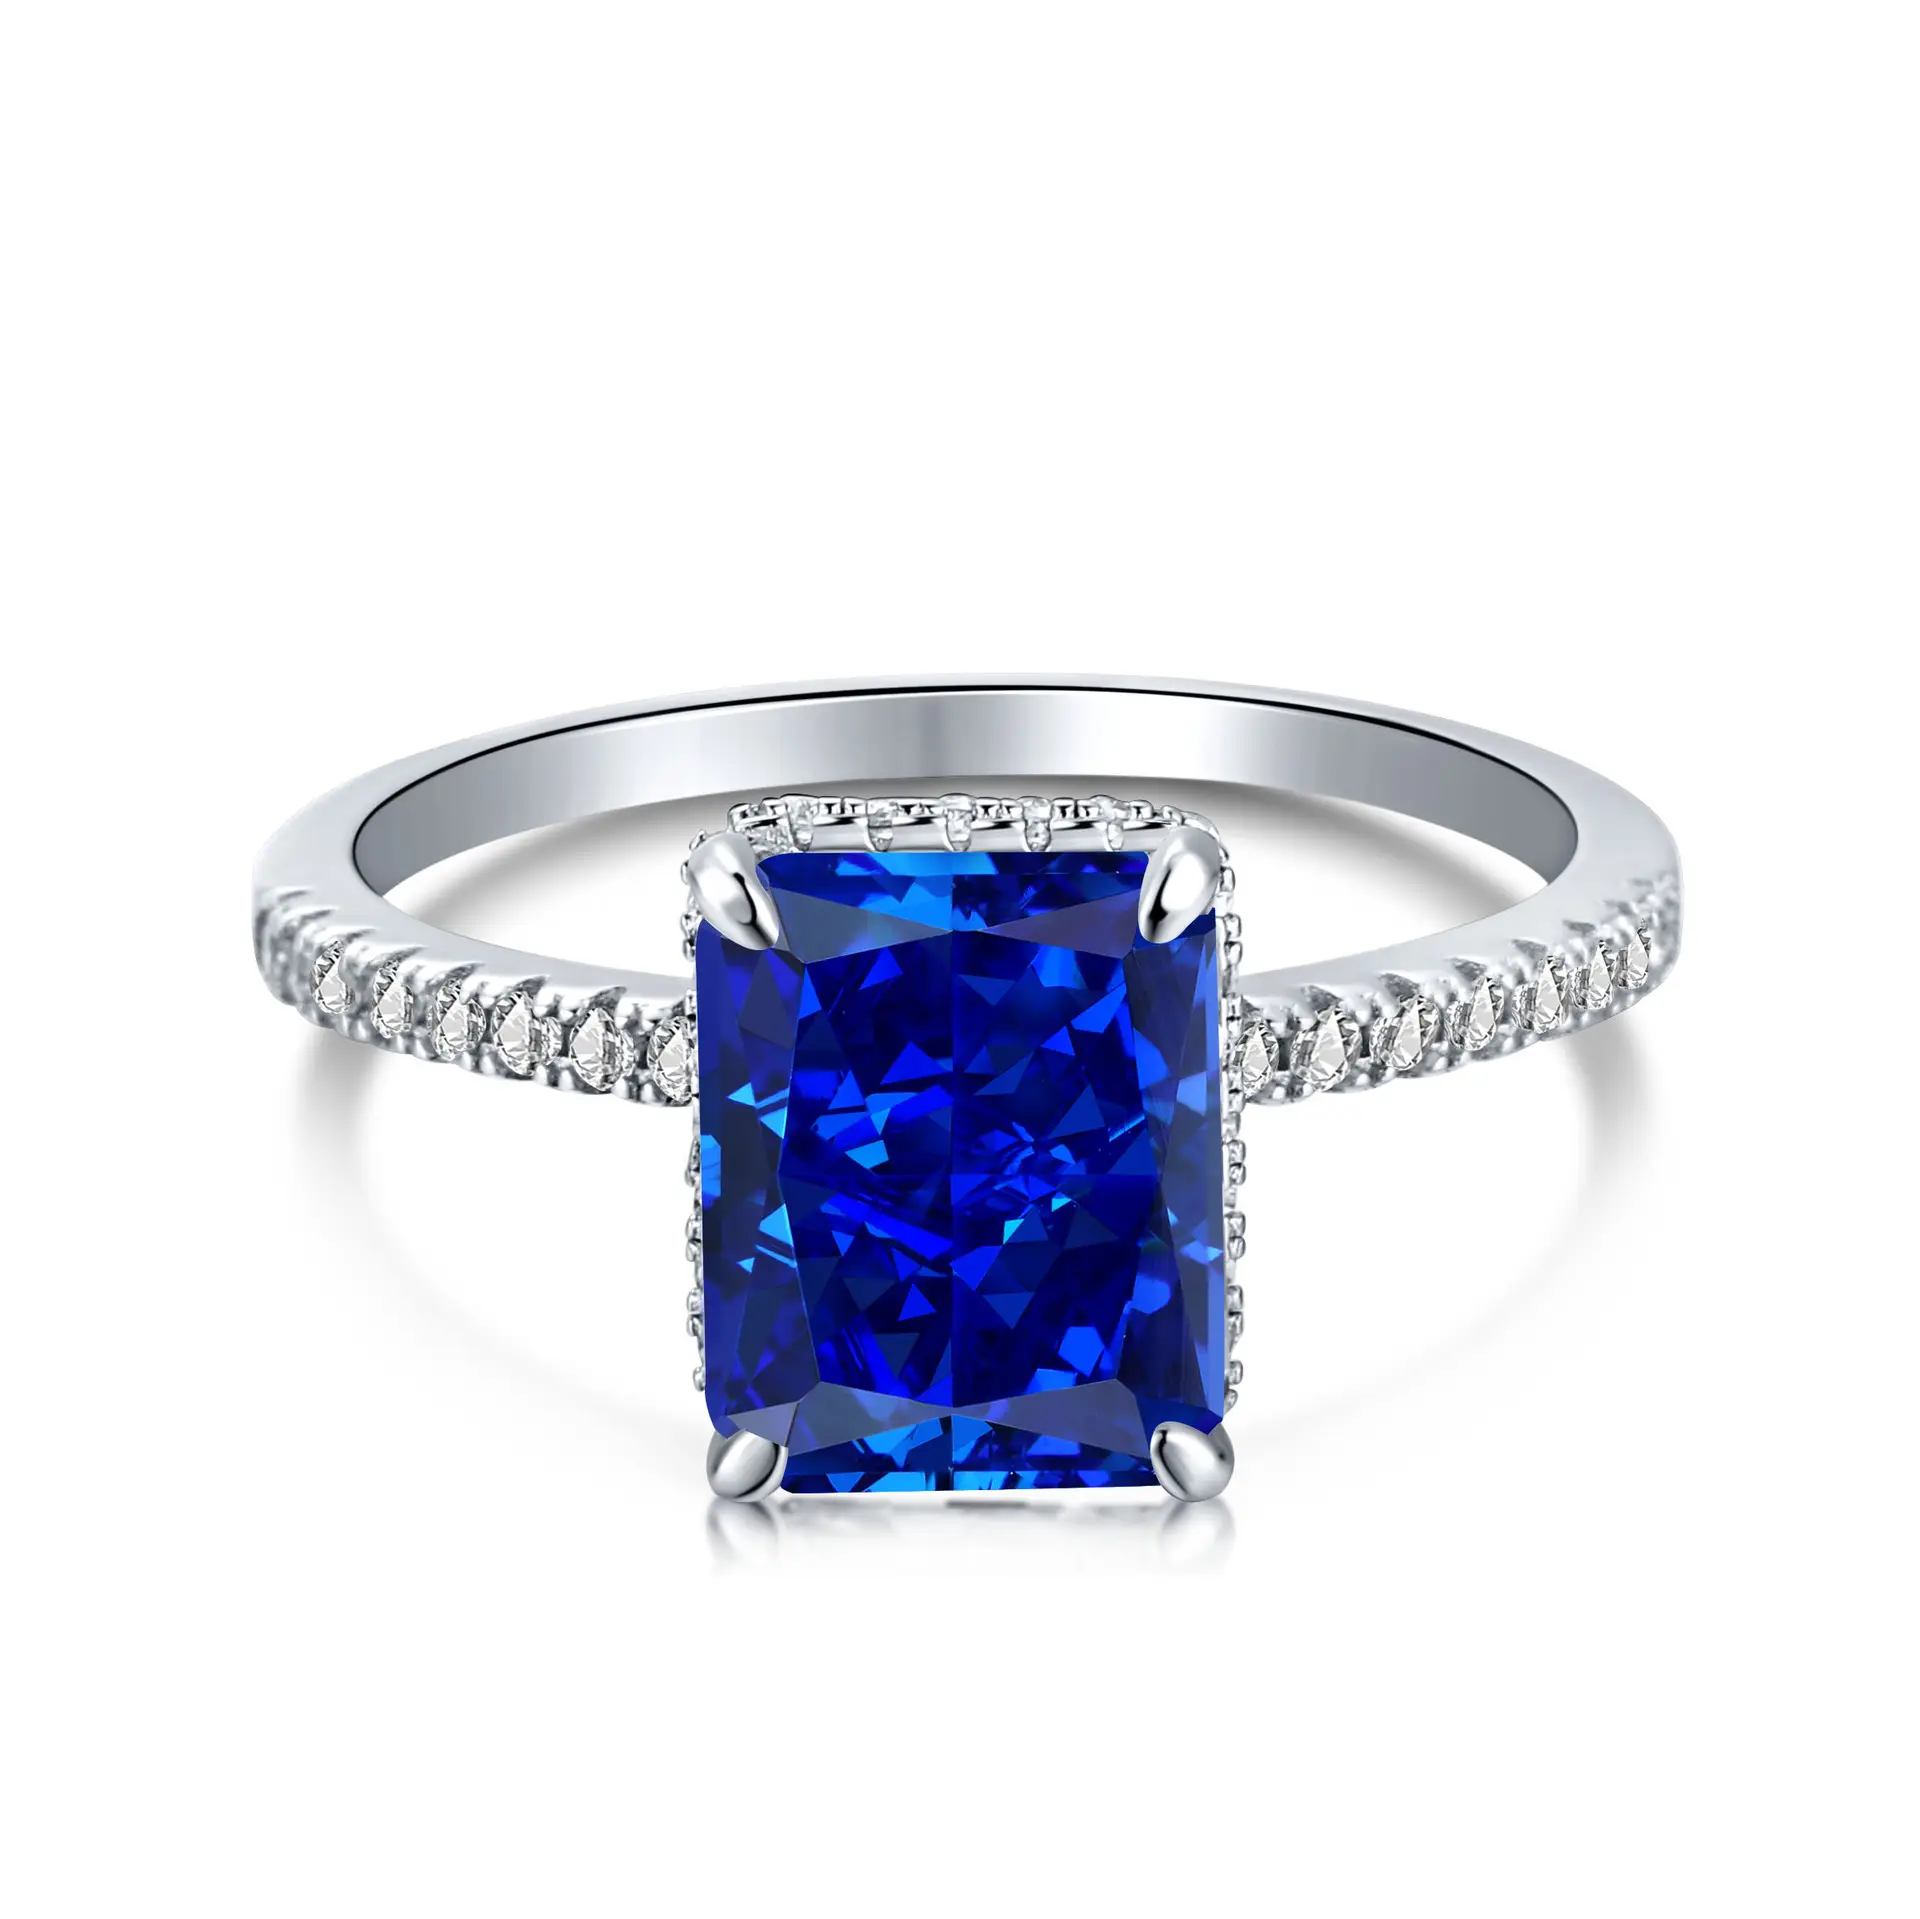 S925 Серебряное кольцо Модные аксессуары ювелирные изделия Геометрические Квадратные круглые сапфировые синие каменные инкрустированные Кольца для женщин